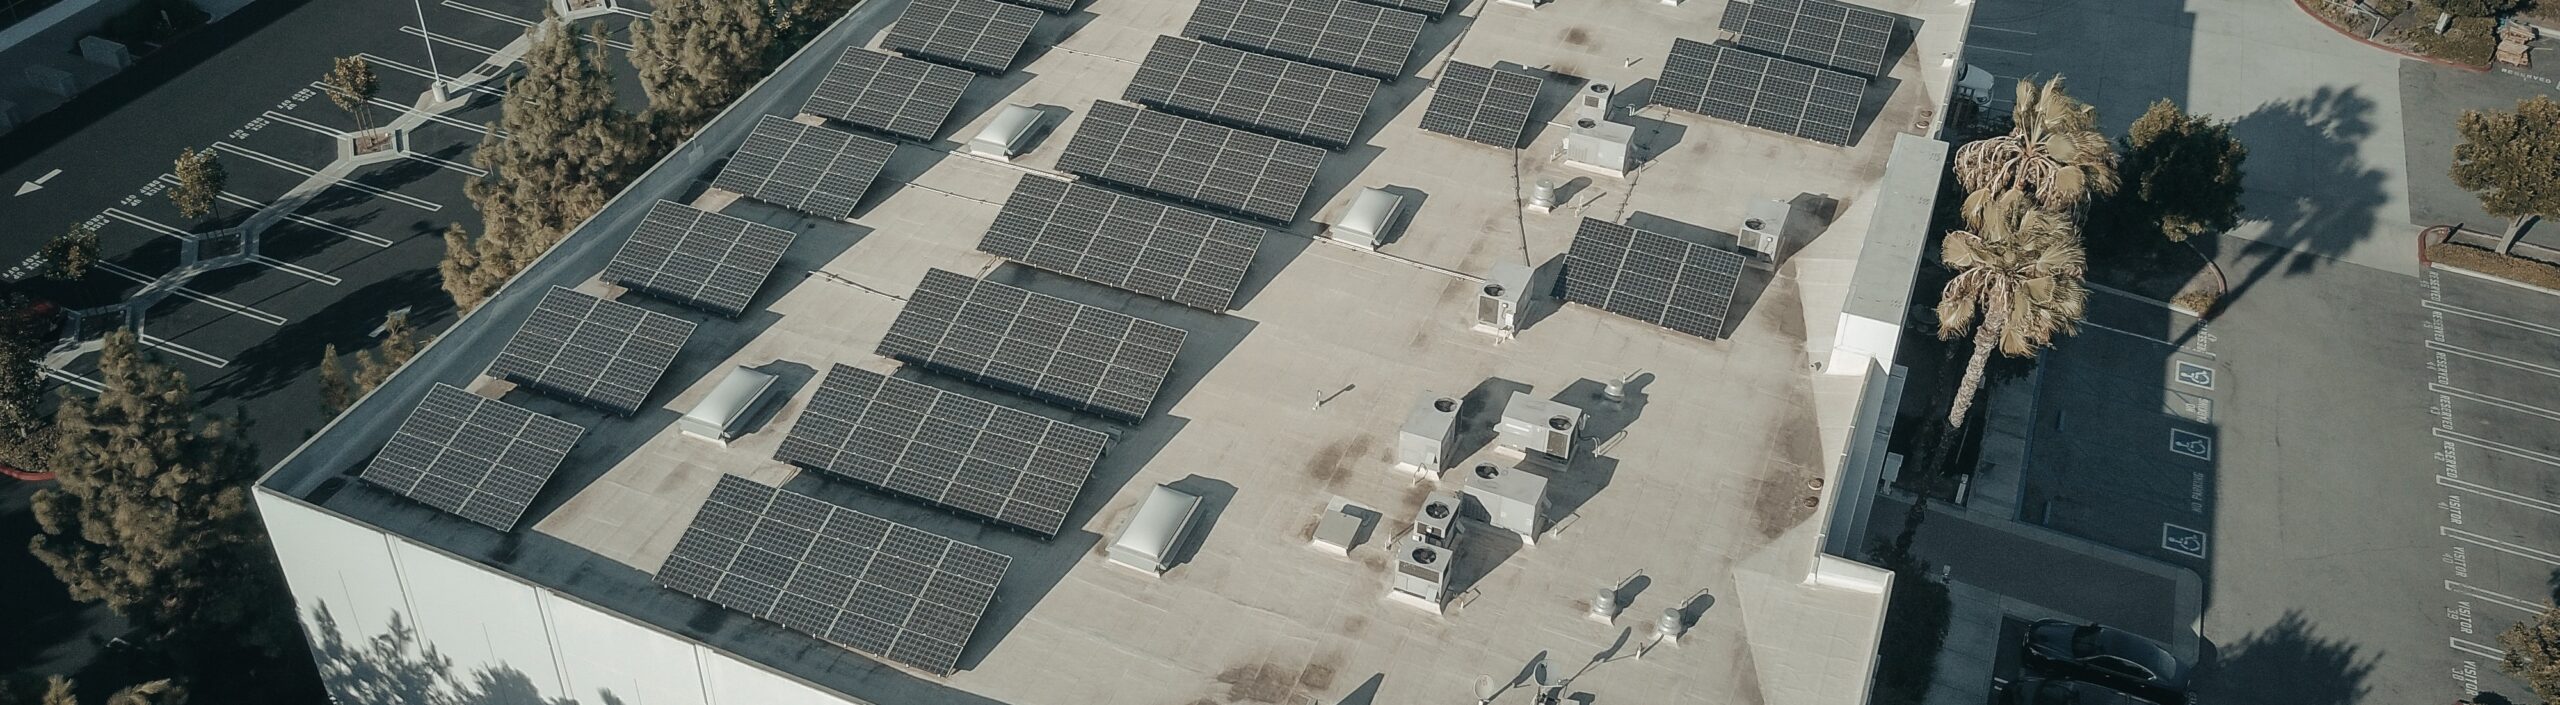 Industria_energia_solar